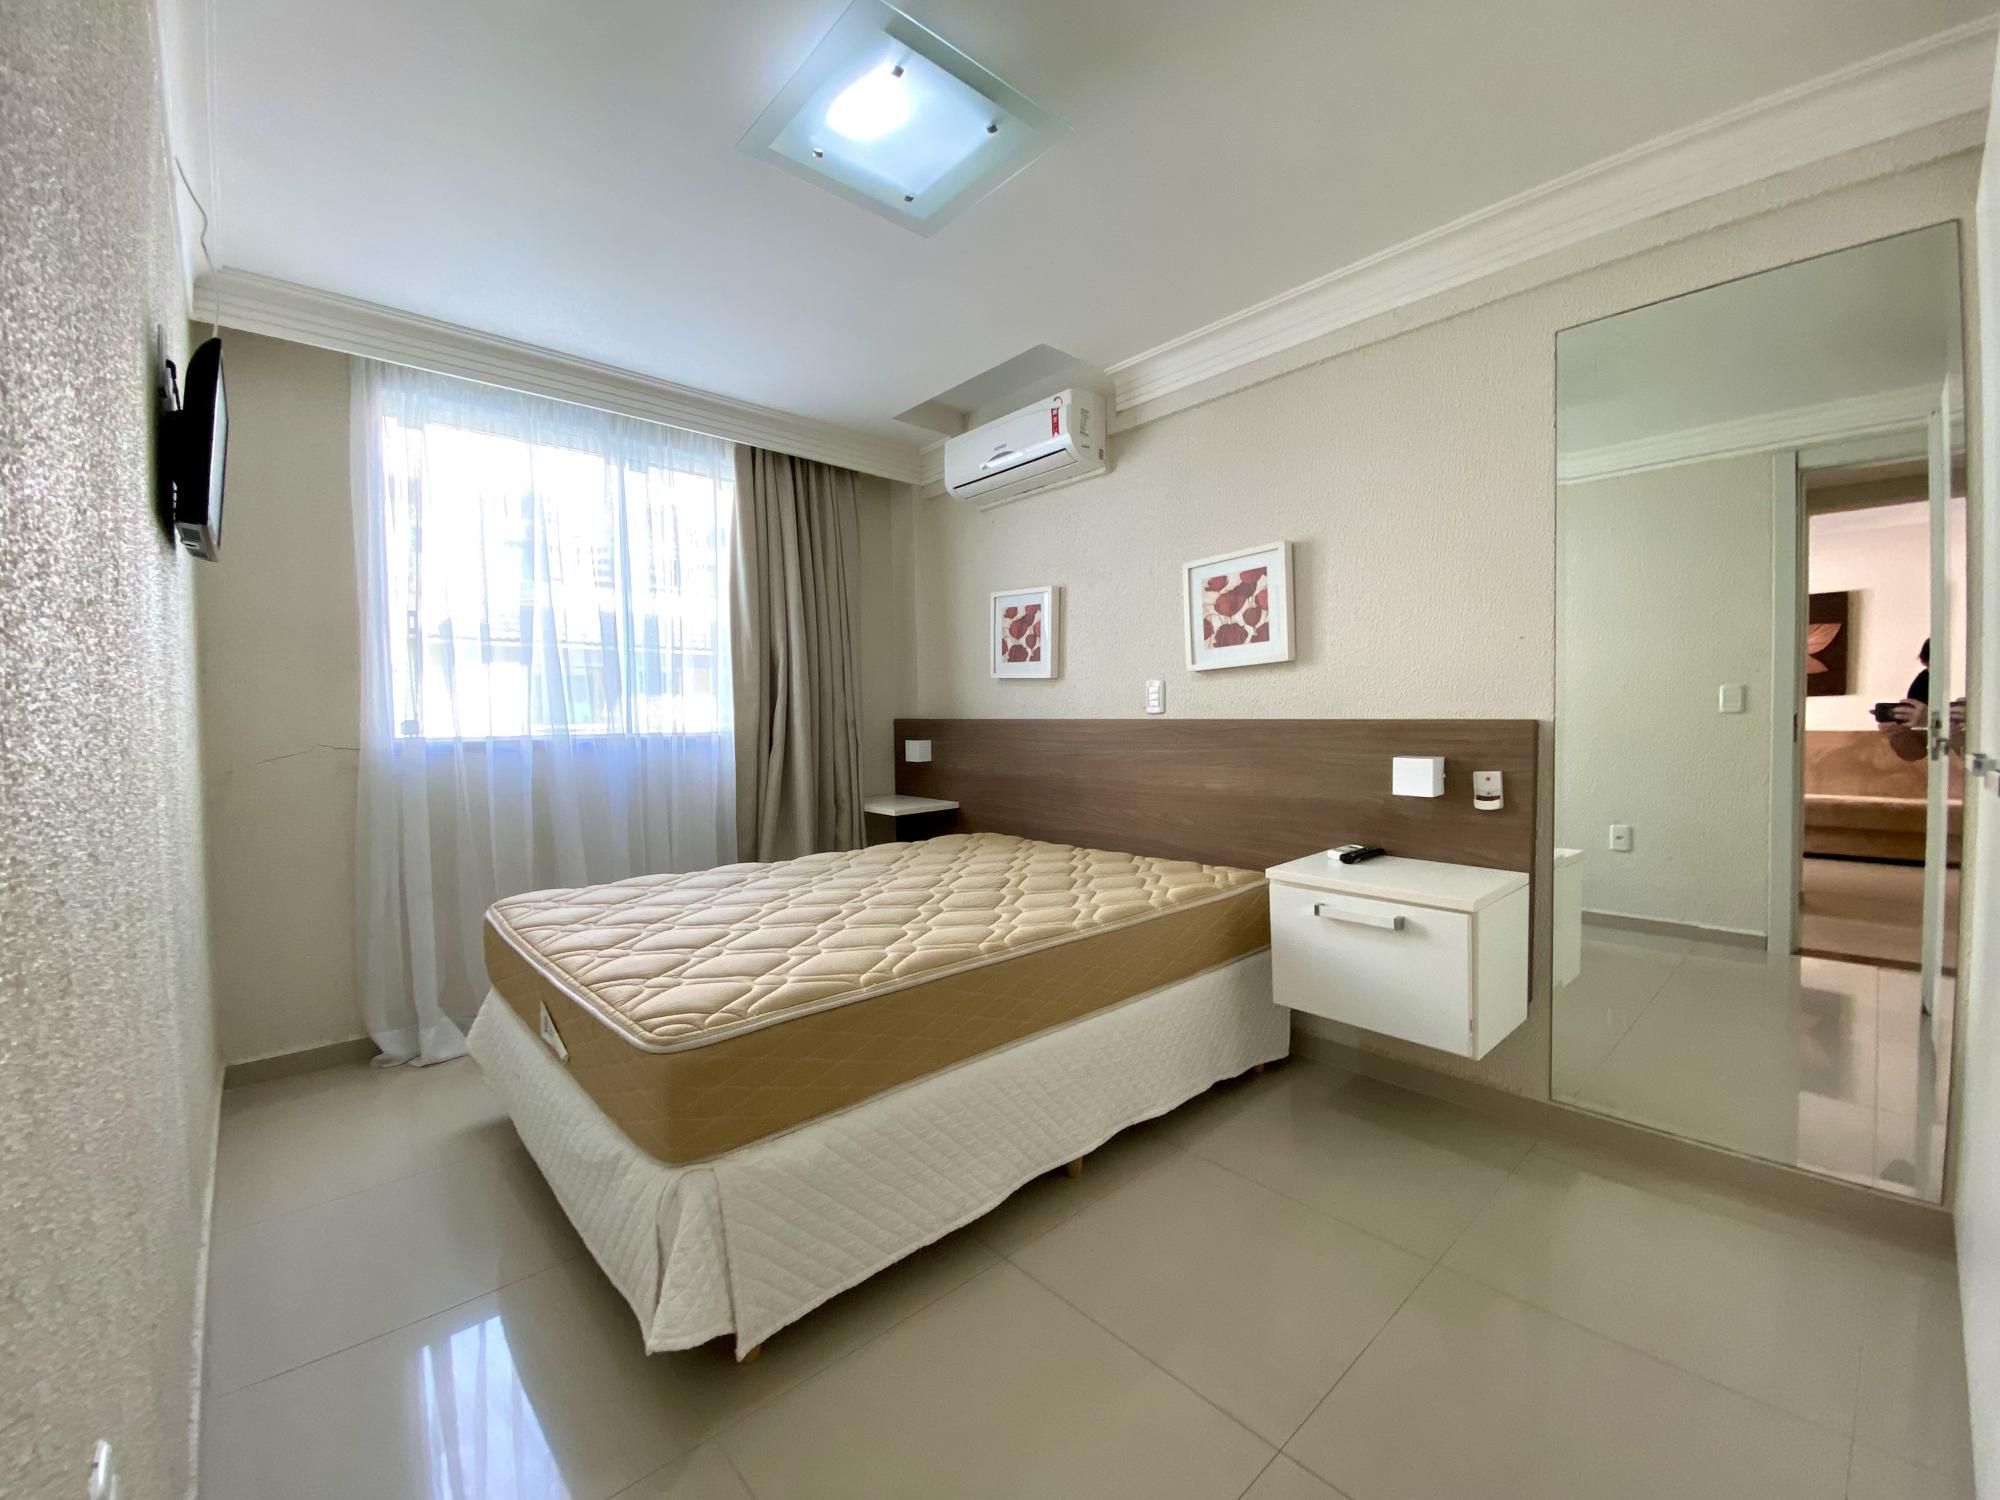 Apartamento com 1 Dormitórios para alugar, 46 m² valor à combinar